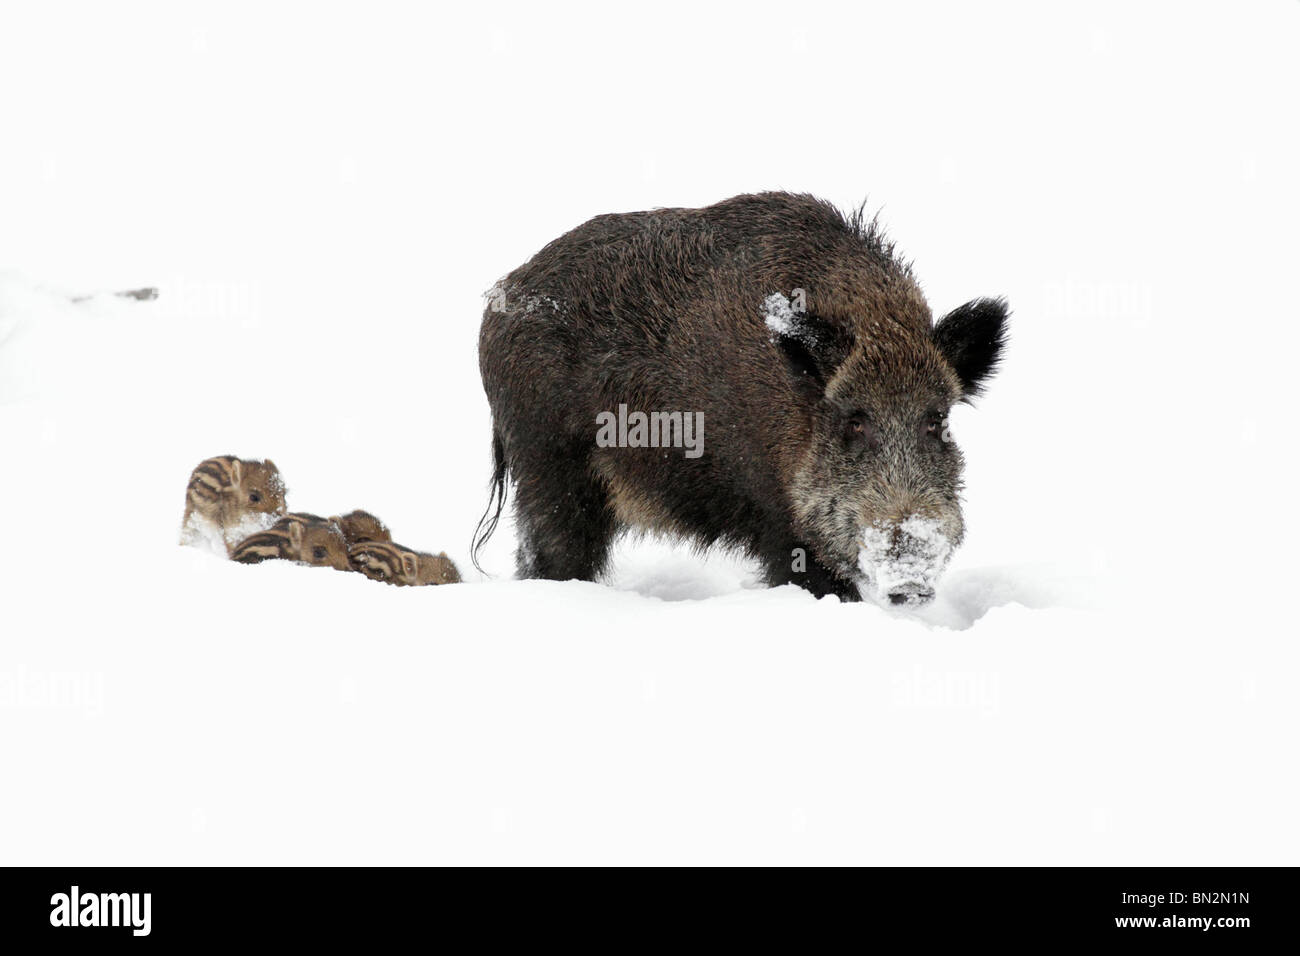 Européen du porc ou sanglier (Sus scrofa), SOW, menant ses quatre porcelets si forêt couverte de neige, hiver, Allemagne Banque D'Images